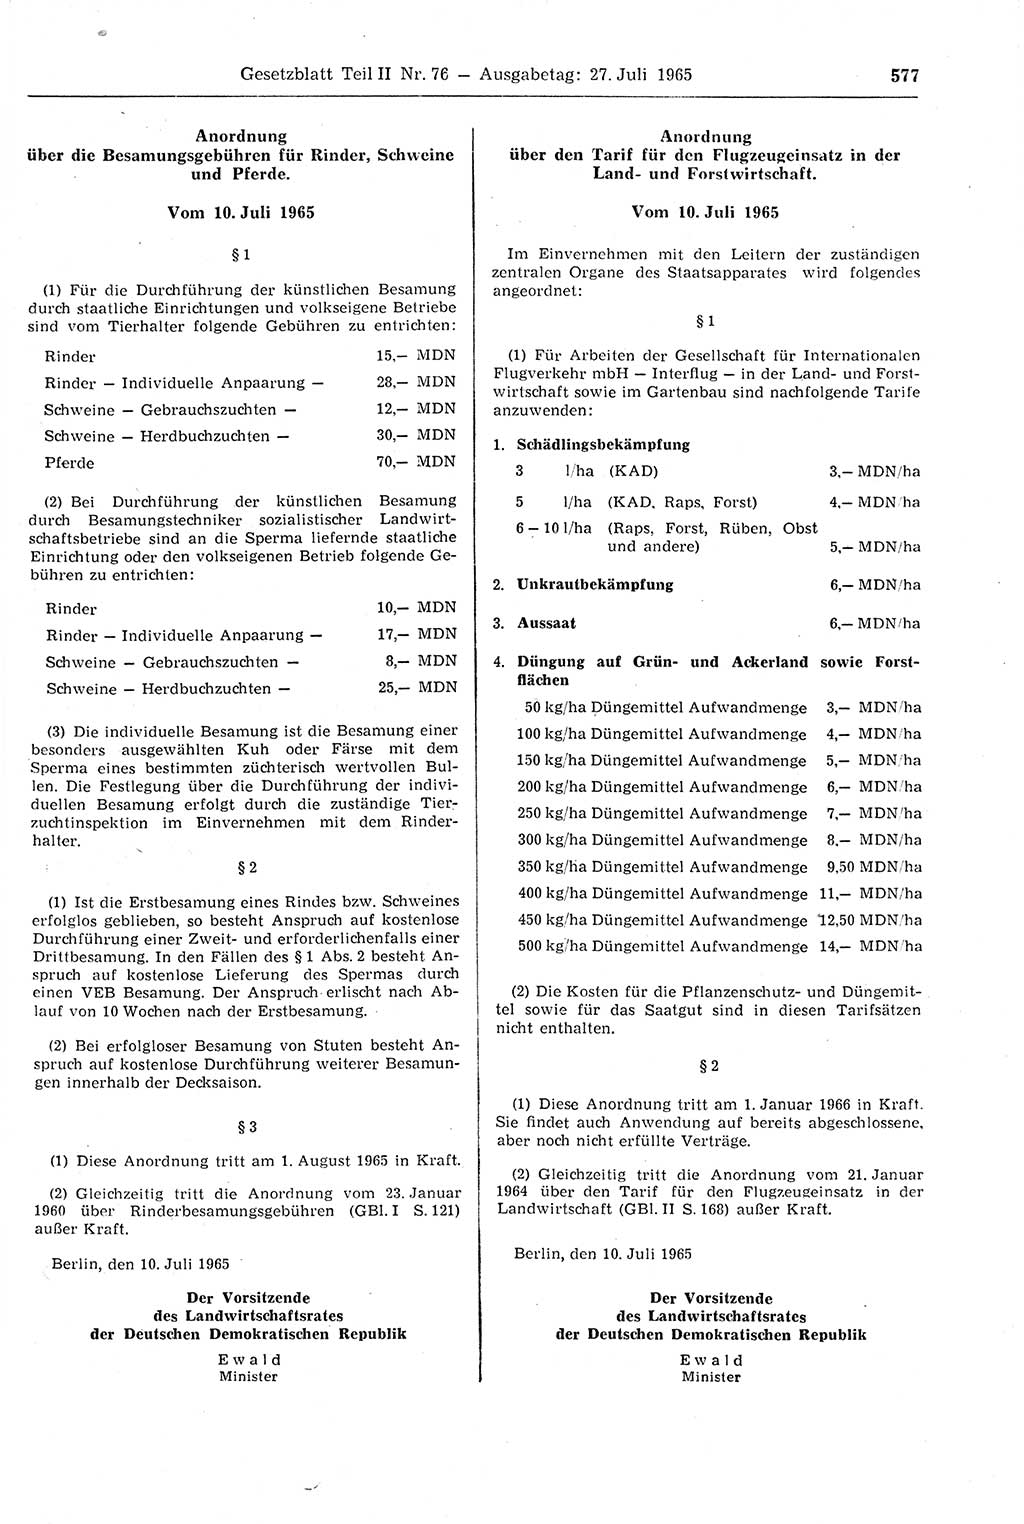 Gesetzblatt (GBl.) der Deutschen Demokratischen Republik (DDR) Teil ⅠⅠ 1965, Seite 577 (GBl. DDR ⅠⅠ 1965, S. 577)